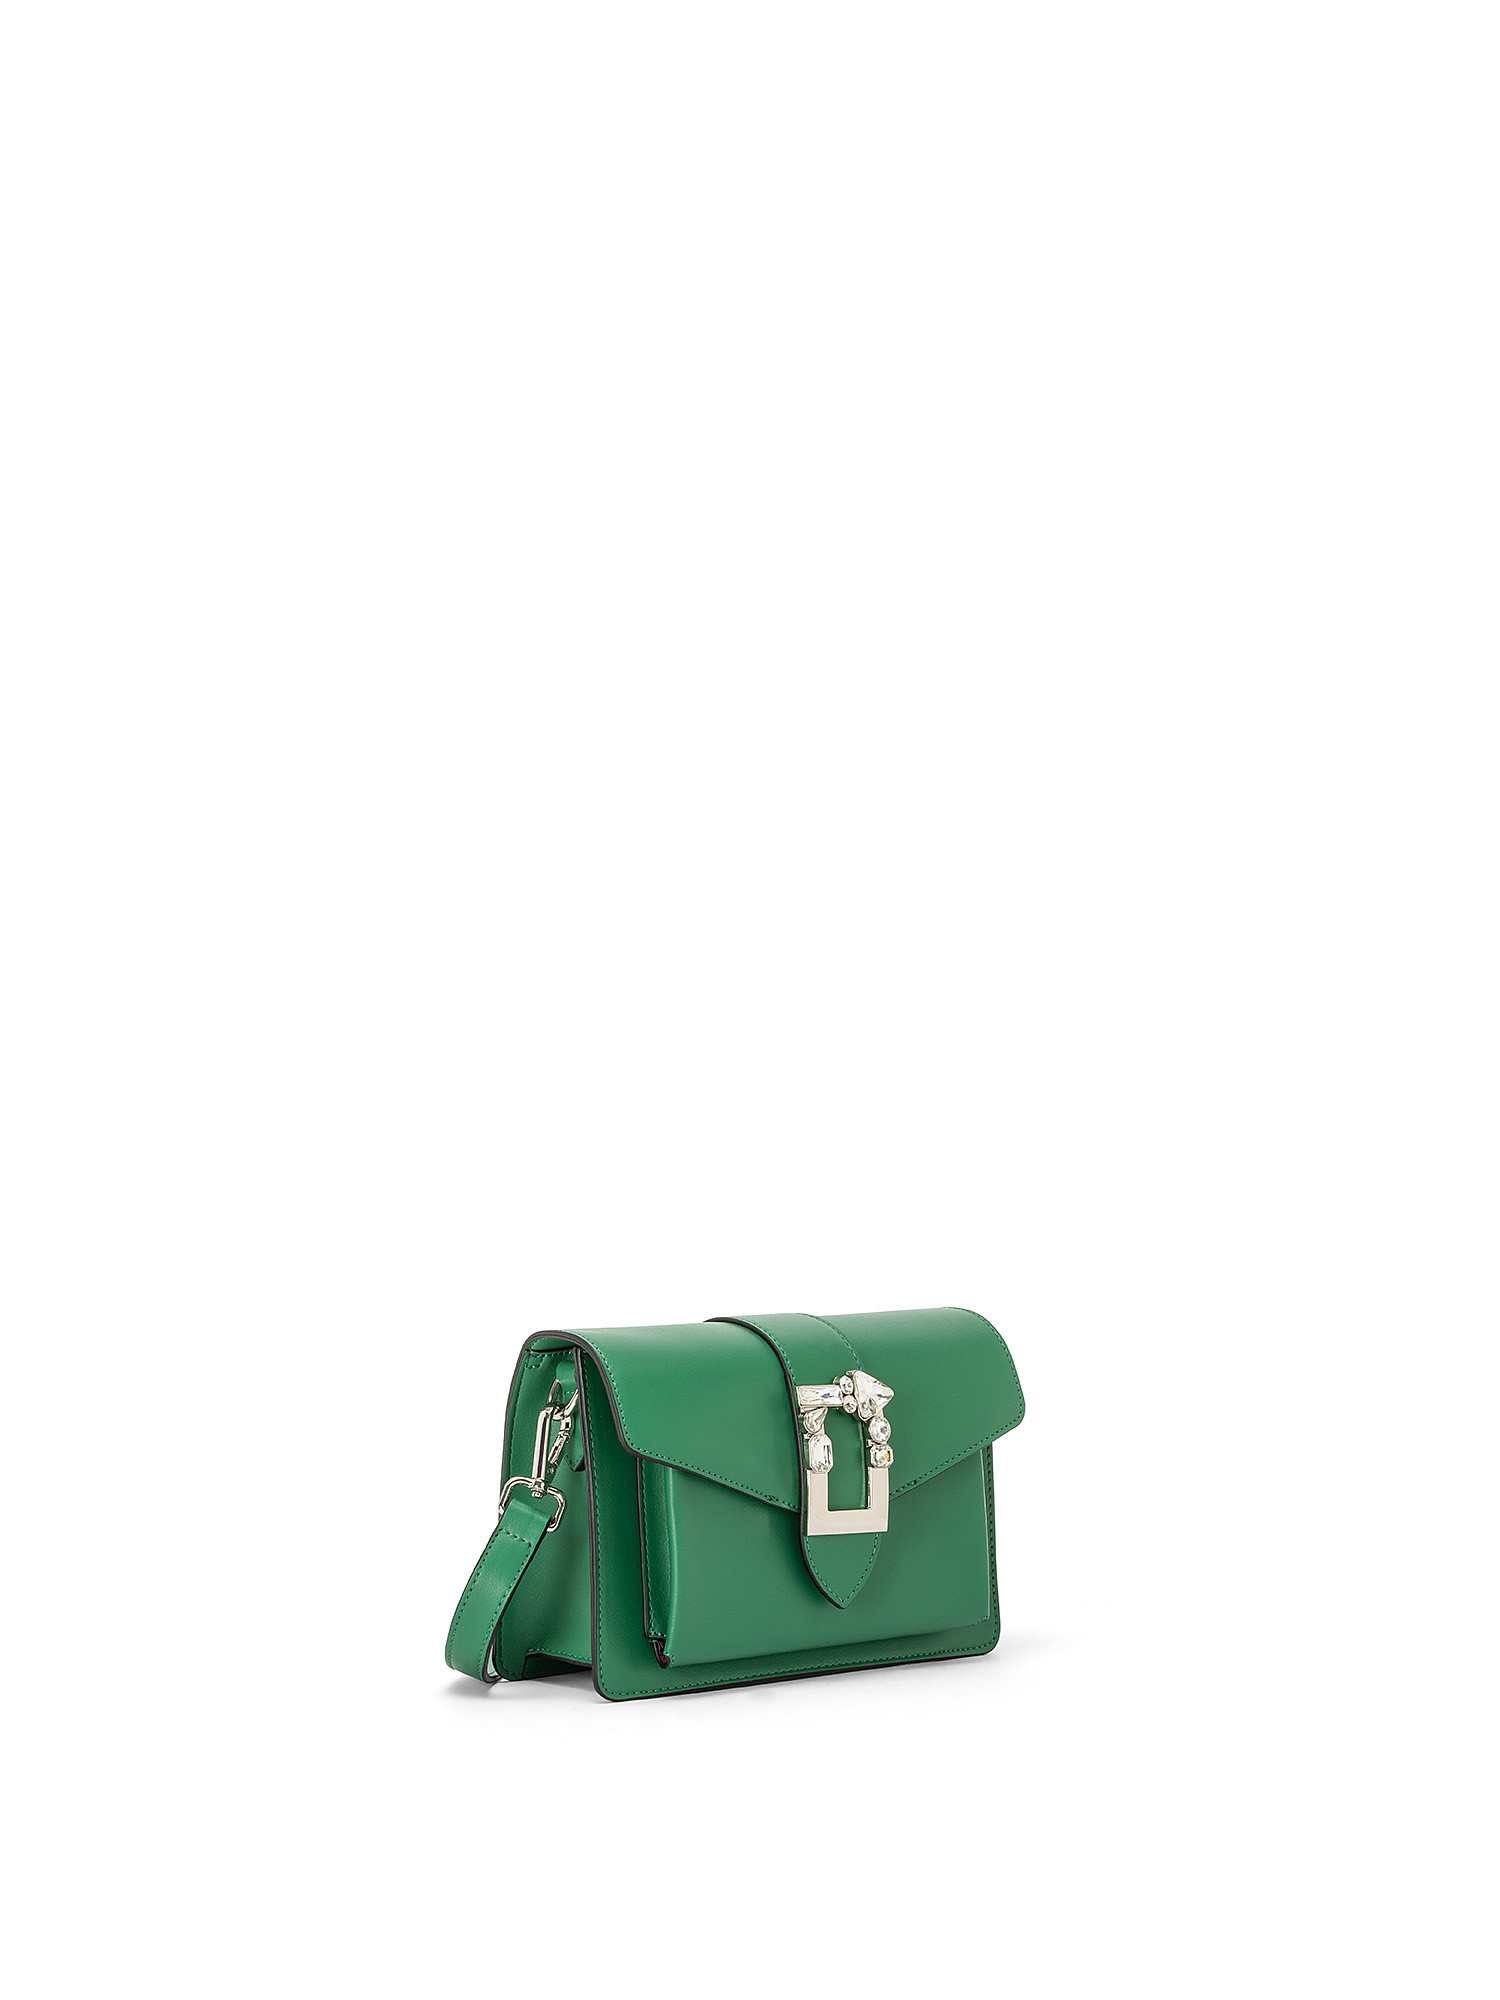 Gaudì - Victoria shoulder bag, Emerald, large image number 1